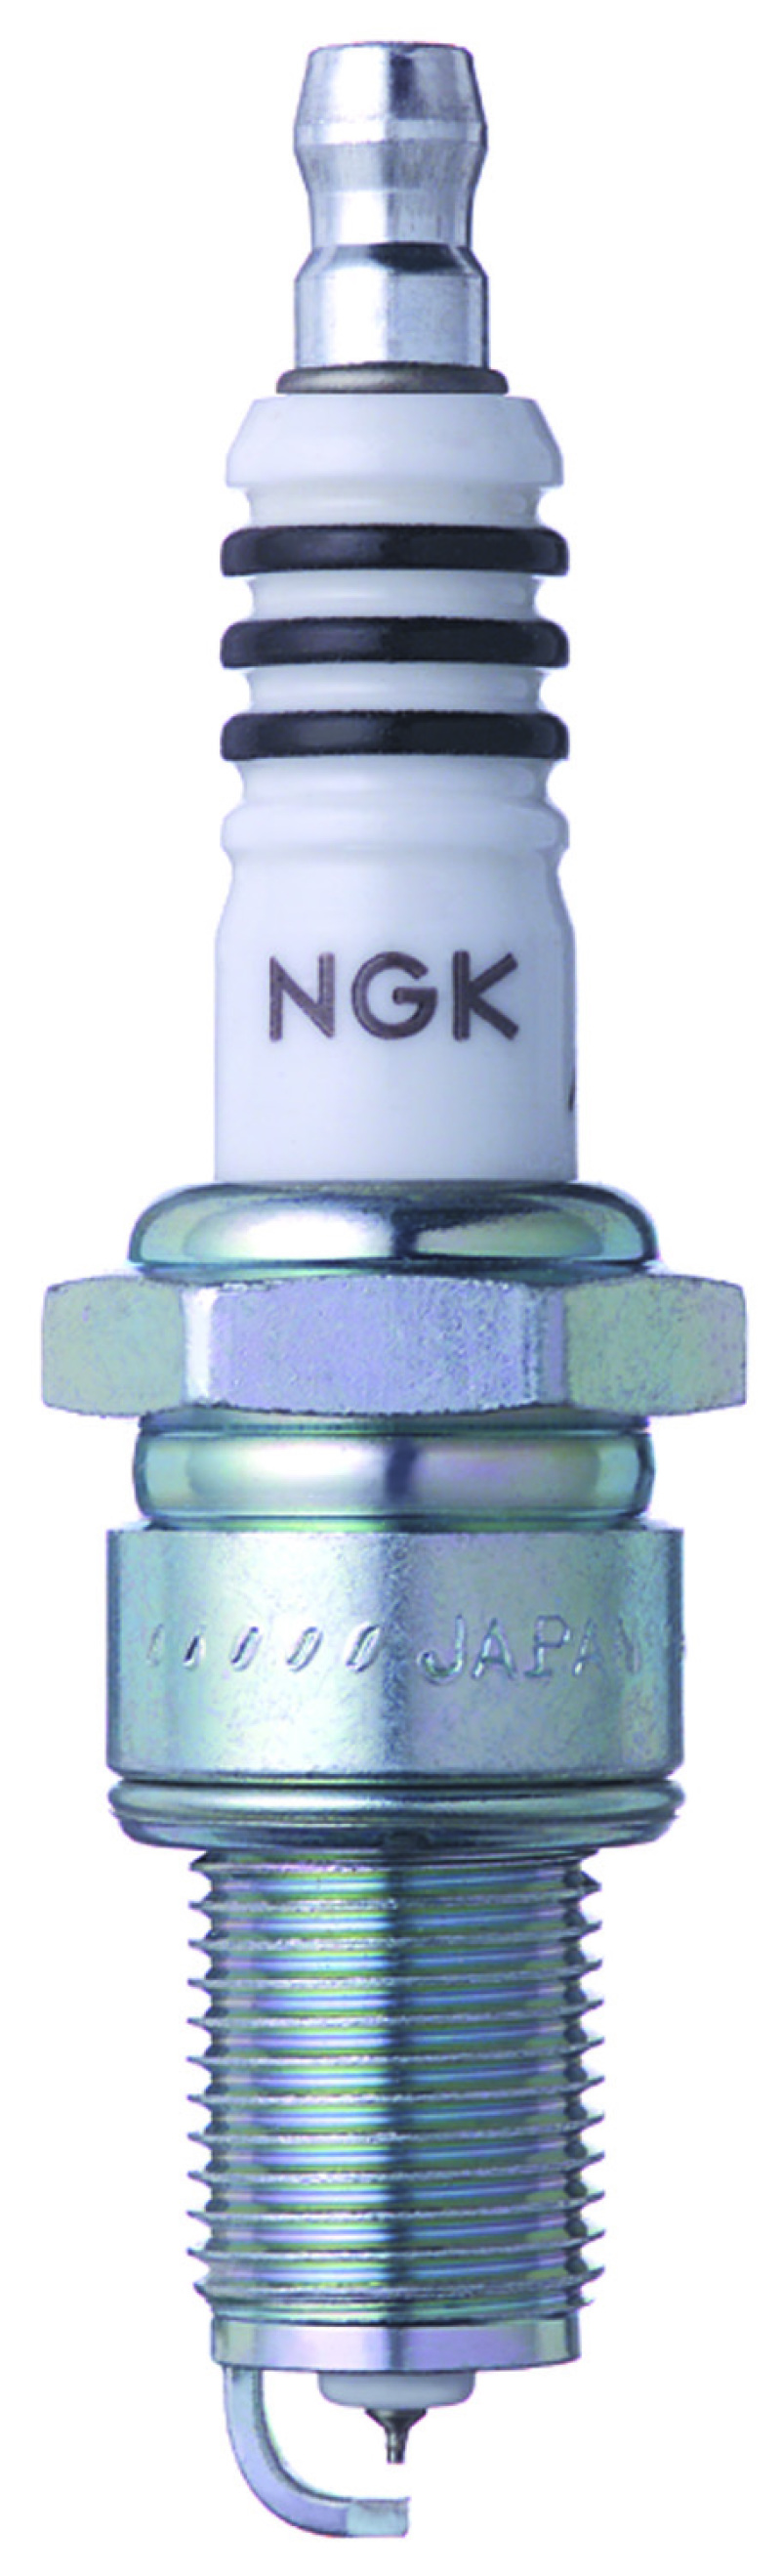 NGK IX Iridium Spark Plug Box of 4 (BPR9EIX) - 6853